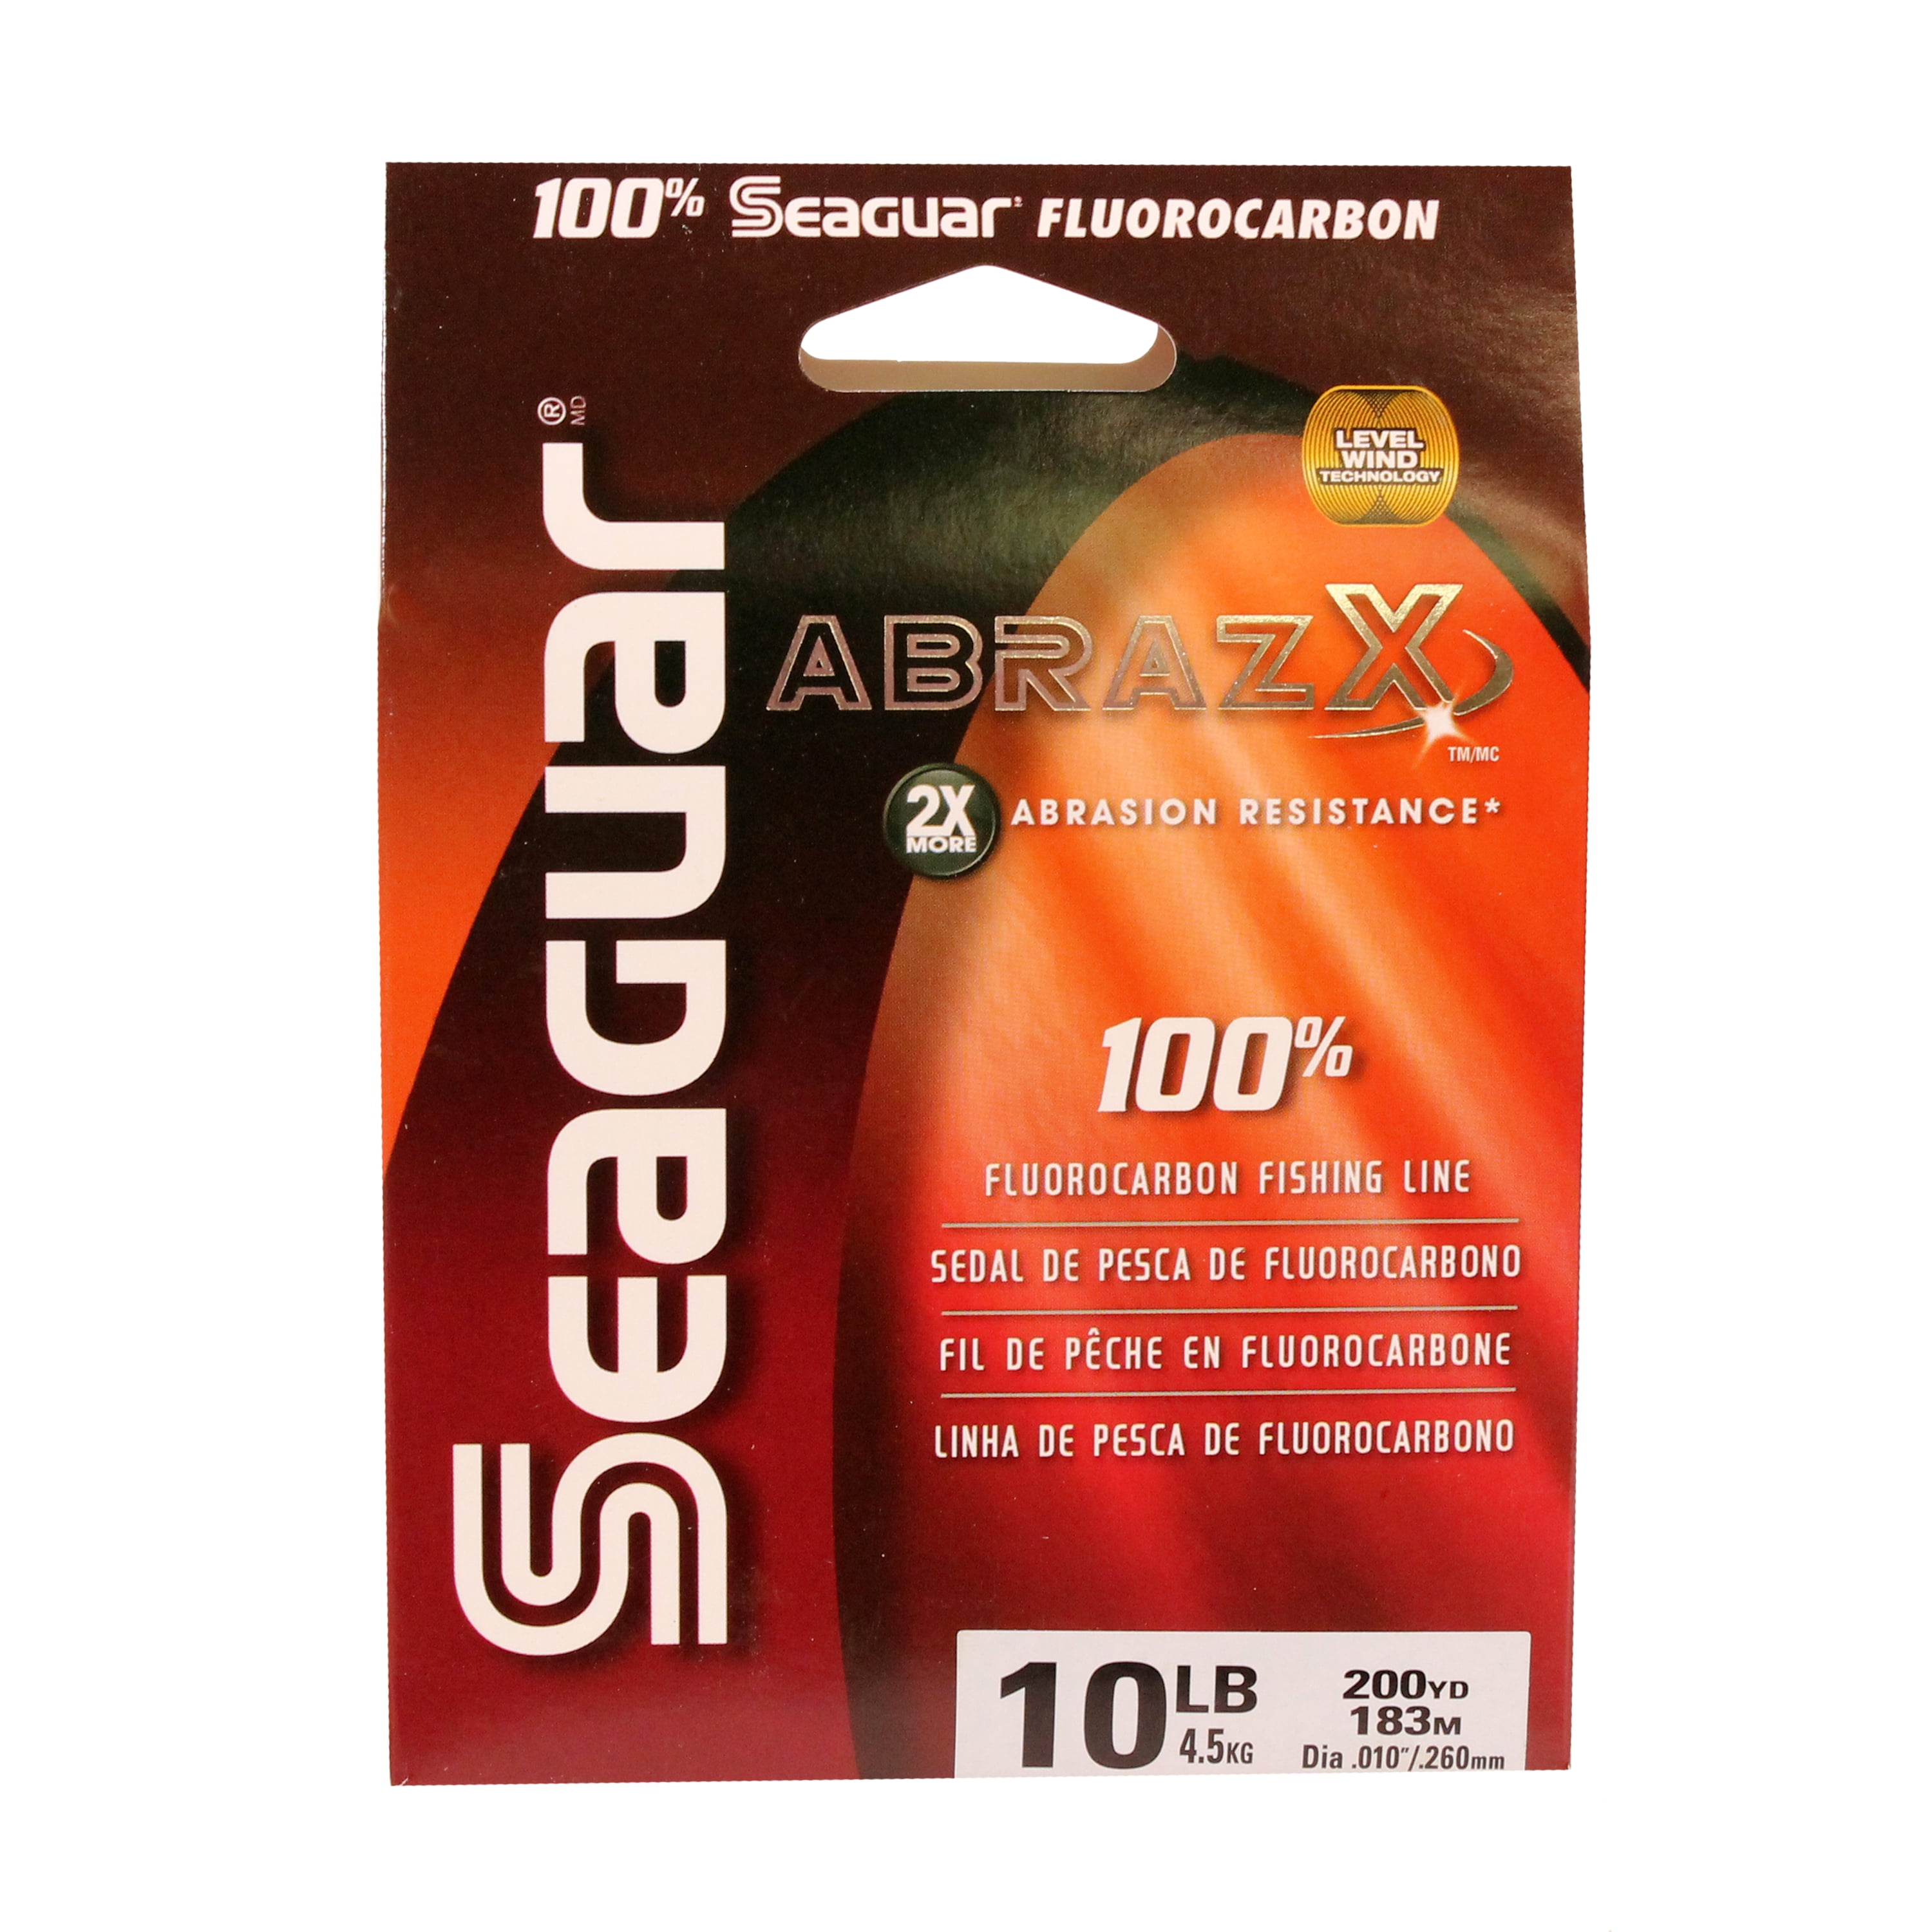 Seaguar AbrazX 100% Fluorocarbon Fishing Line 10lbs, 200yds Break